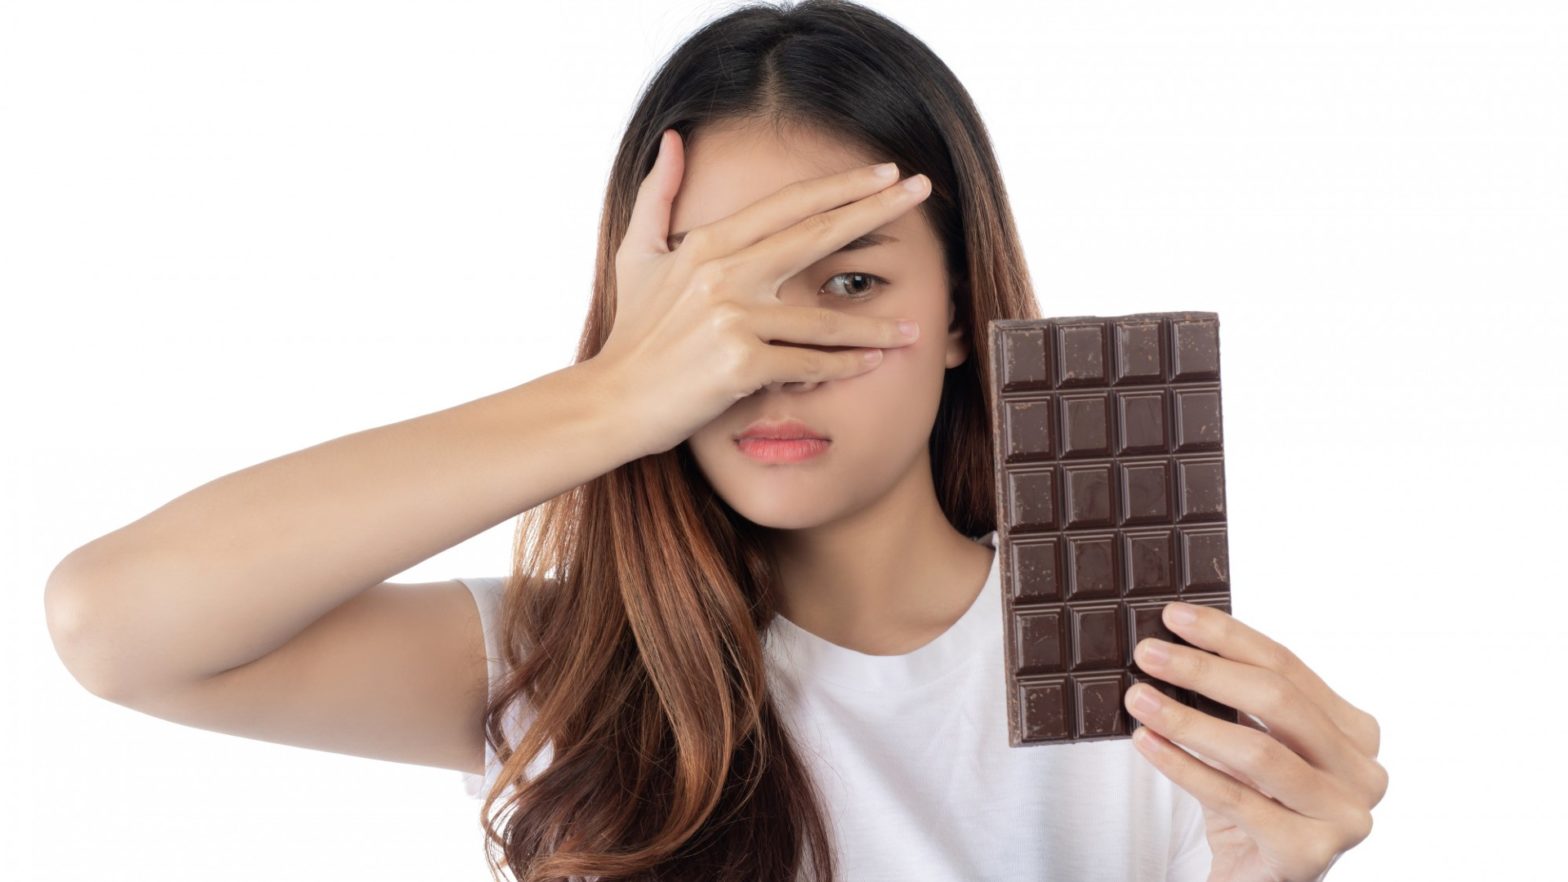 Mulher com semblante desconfiado olhando uma barra de chocolate.